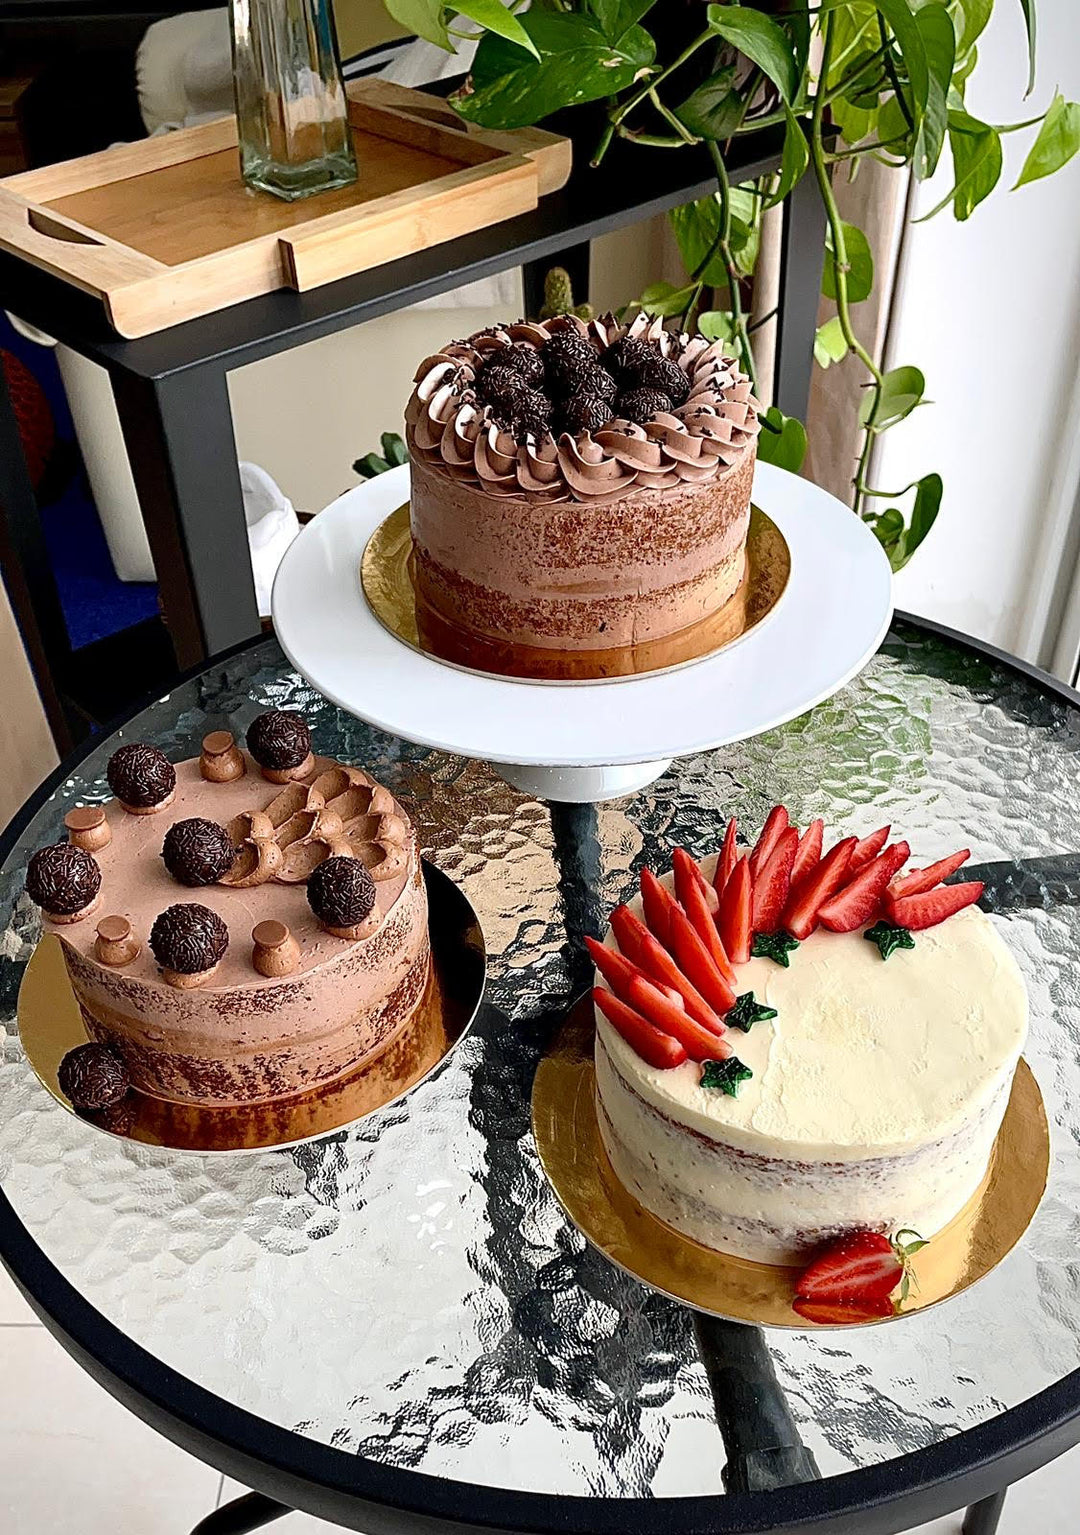 Bolos & Brigadeiros (Cakes and  Brazilian Truffles)